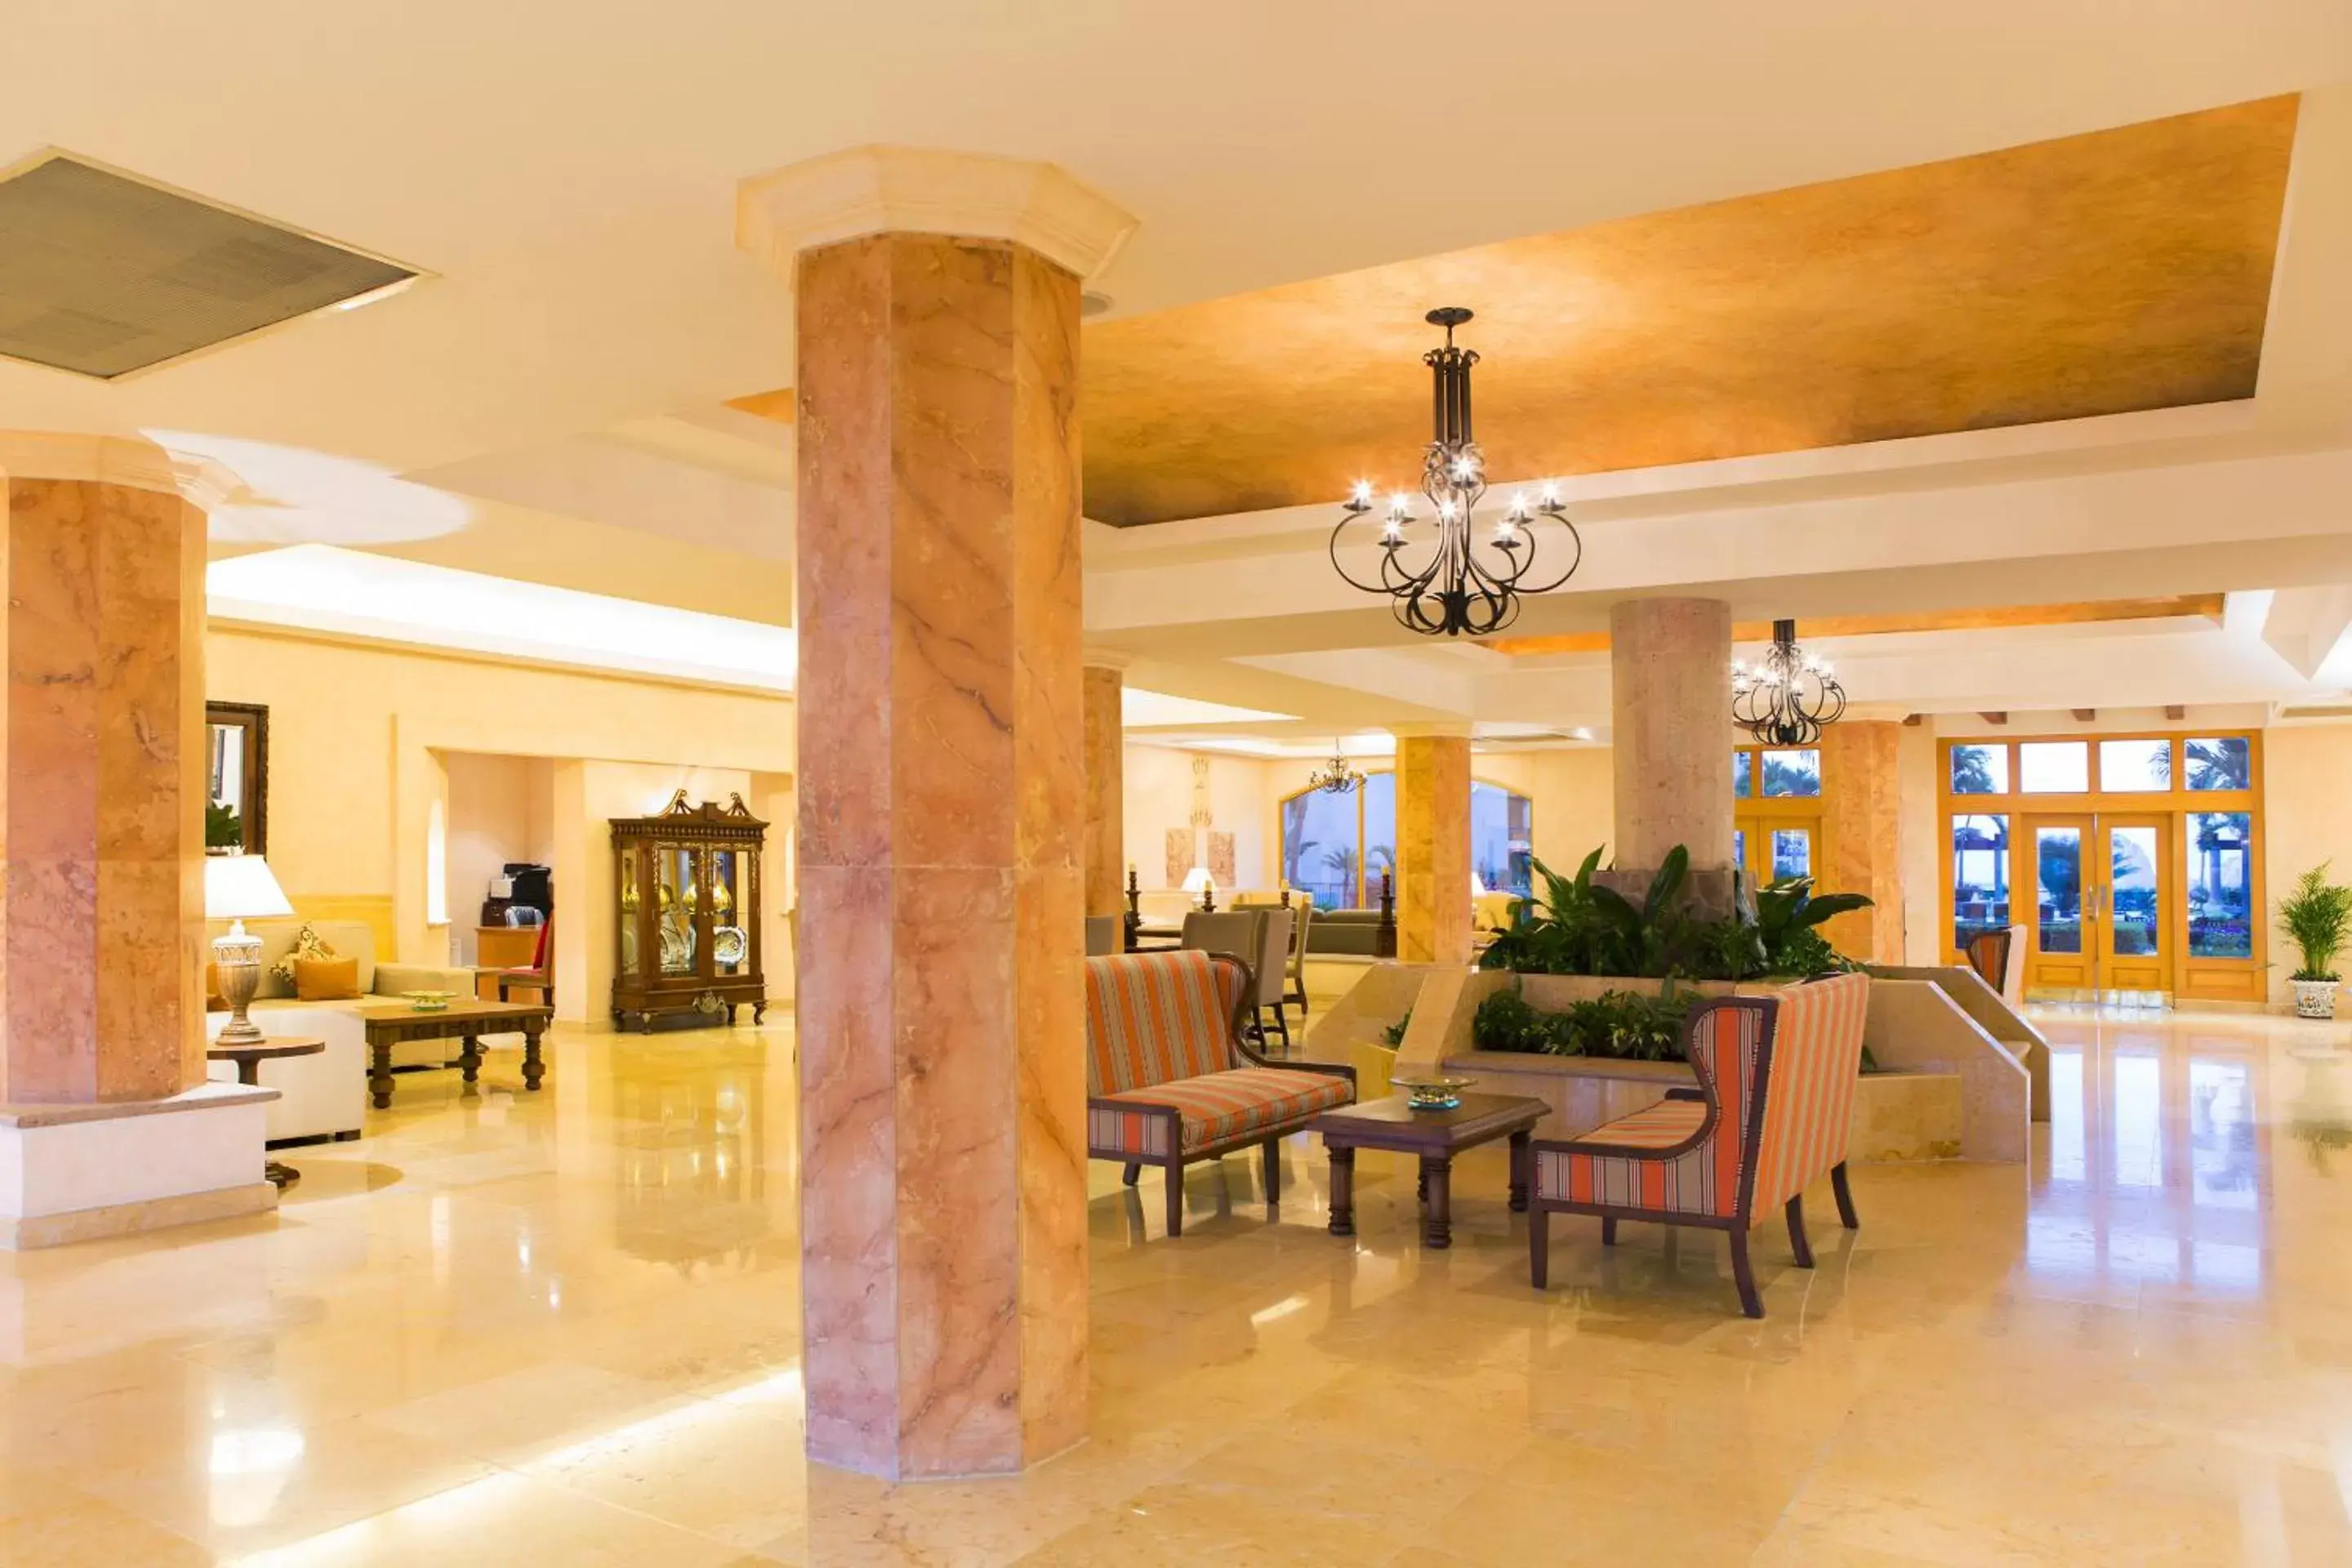 Lobby or reception, Restaurant/Places to Eat in Villa la Estancia Beach Resort & Spa